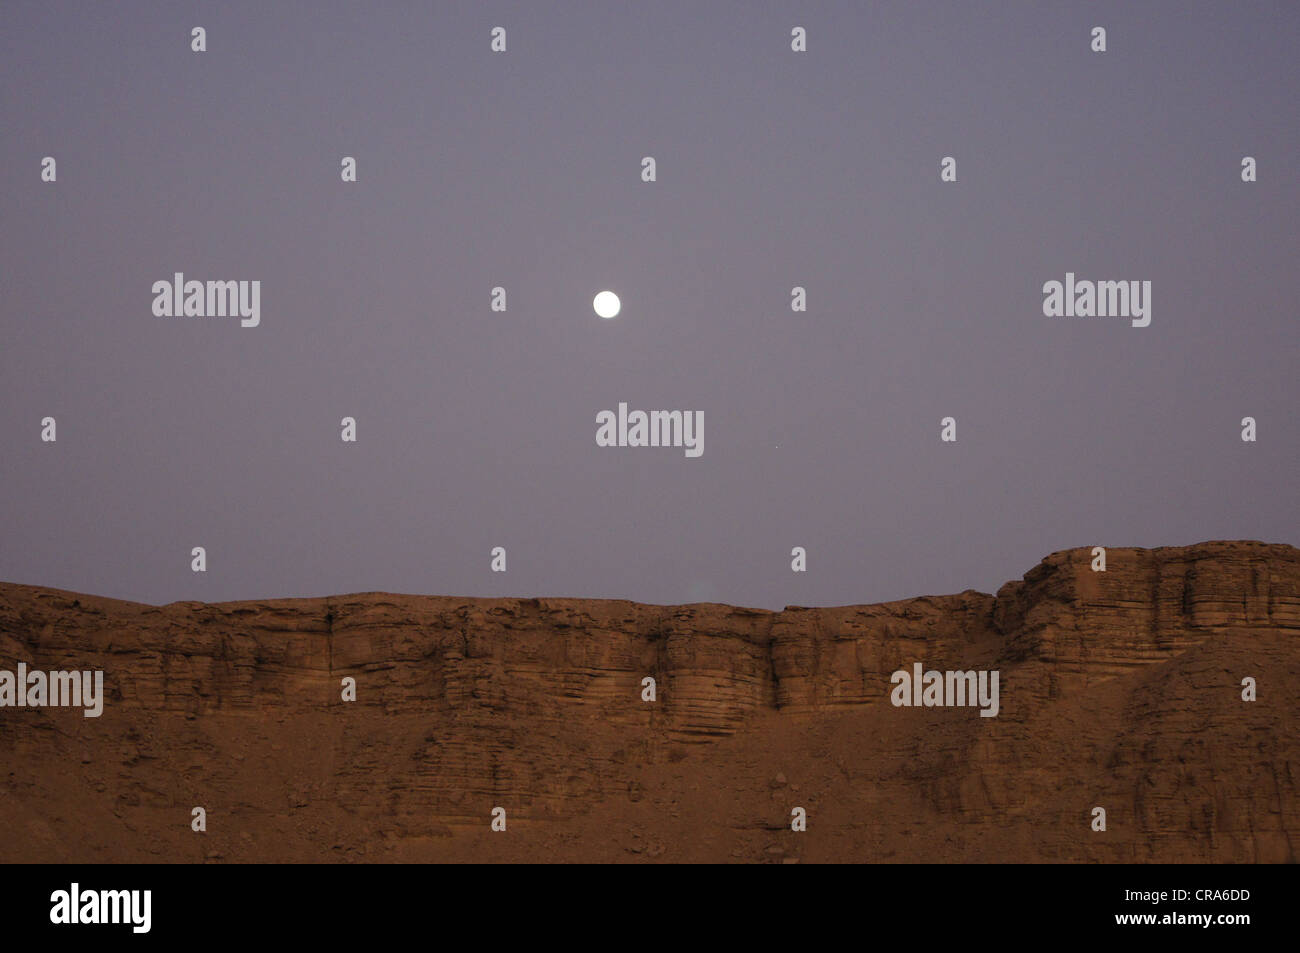 La luna saliendo sobre formaciones rocosas en el desierto de arena roja - Riad, Reino de Arabia Saudita Foto de stock